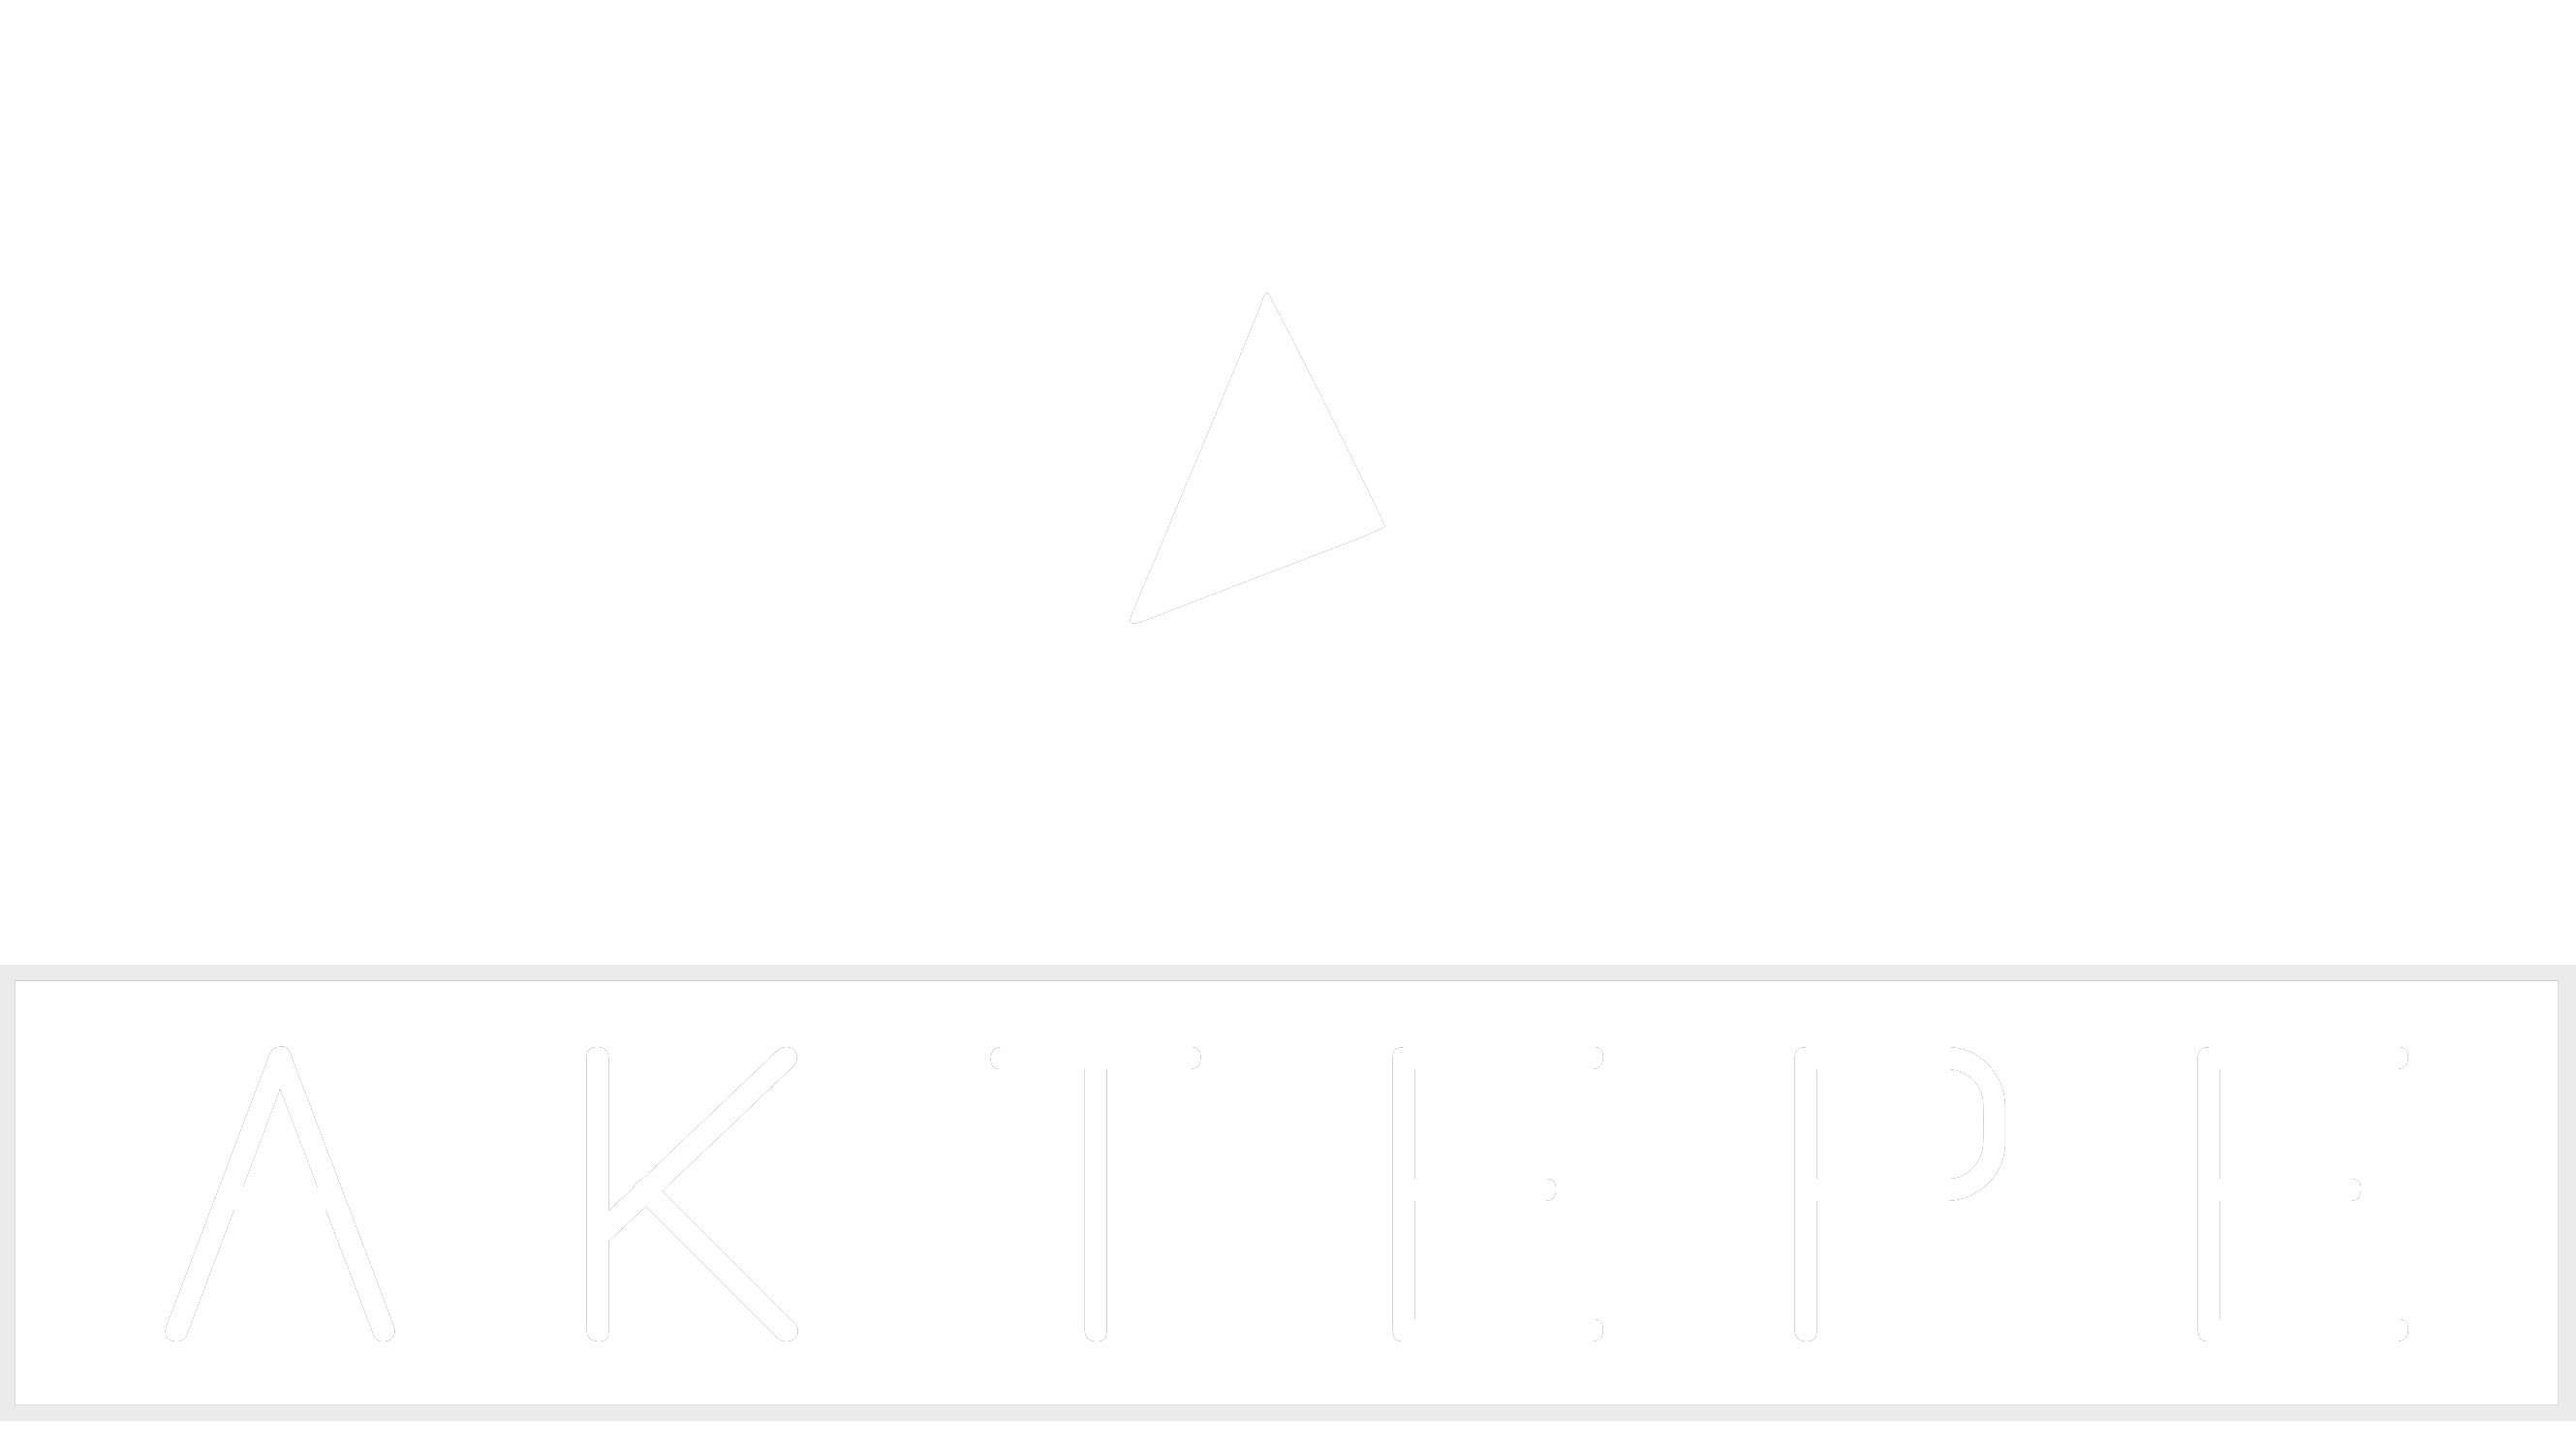 Mondeo - Aktepe Shop - Oto Müzik Görüntü Navigasyon Sistemleri ve Teyp Çerçevesi Satış Merkezi